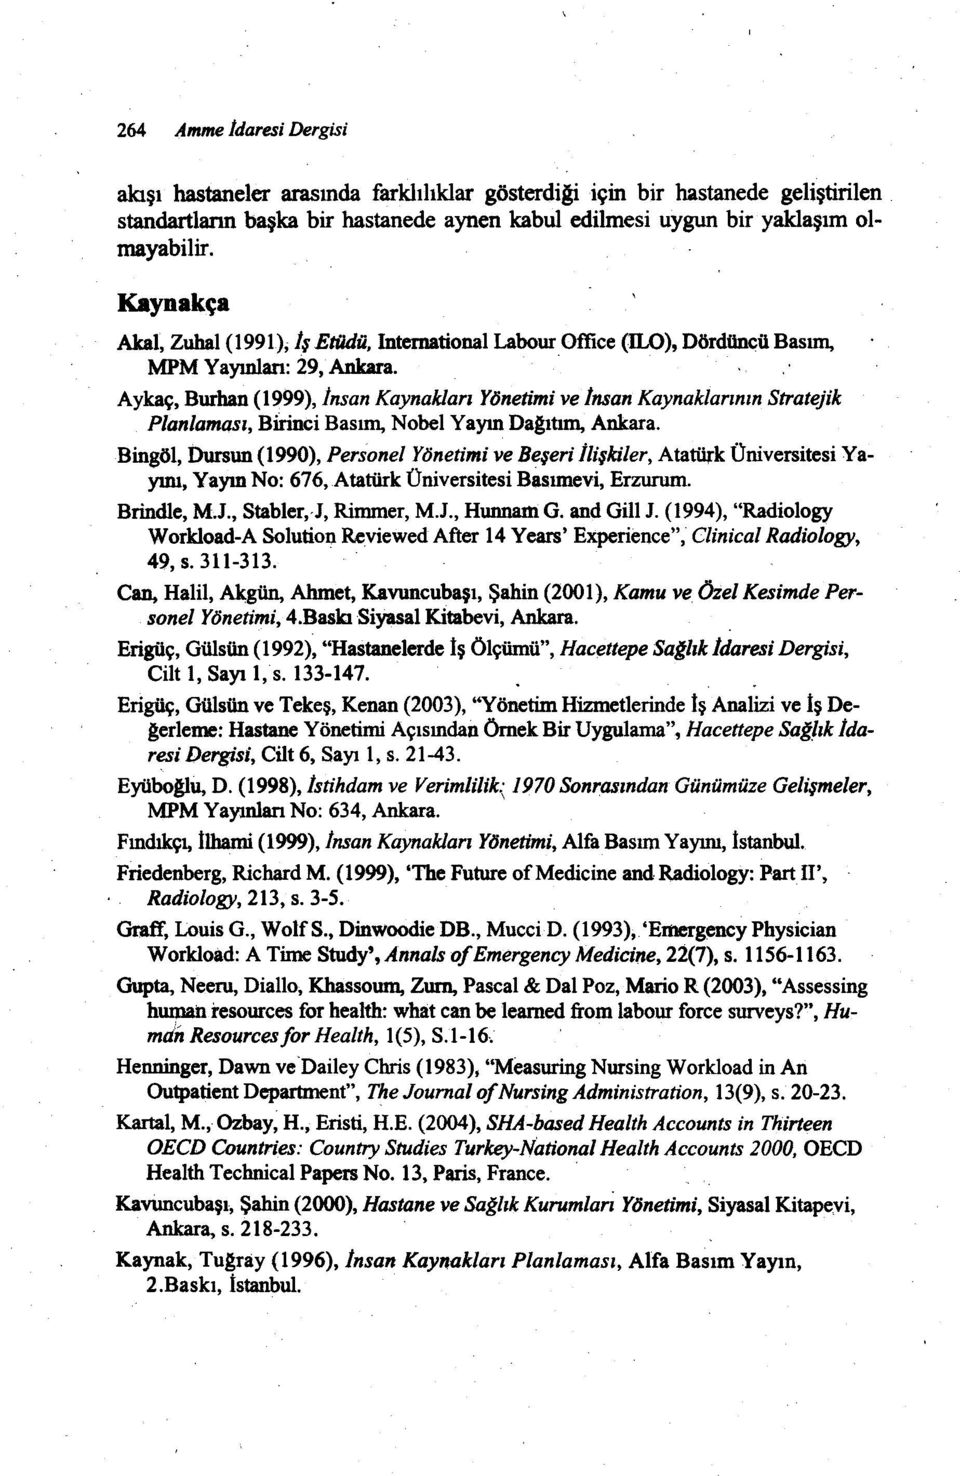 ' Aykaç, Burhan (1999), Insan Kaynakları fnetm ve Insan Kaynaklarının Stratejk Planla1'fl4Sı, Blnc Basım, Nobel Yayın Dagıtım, Ankara.